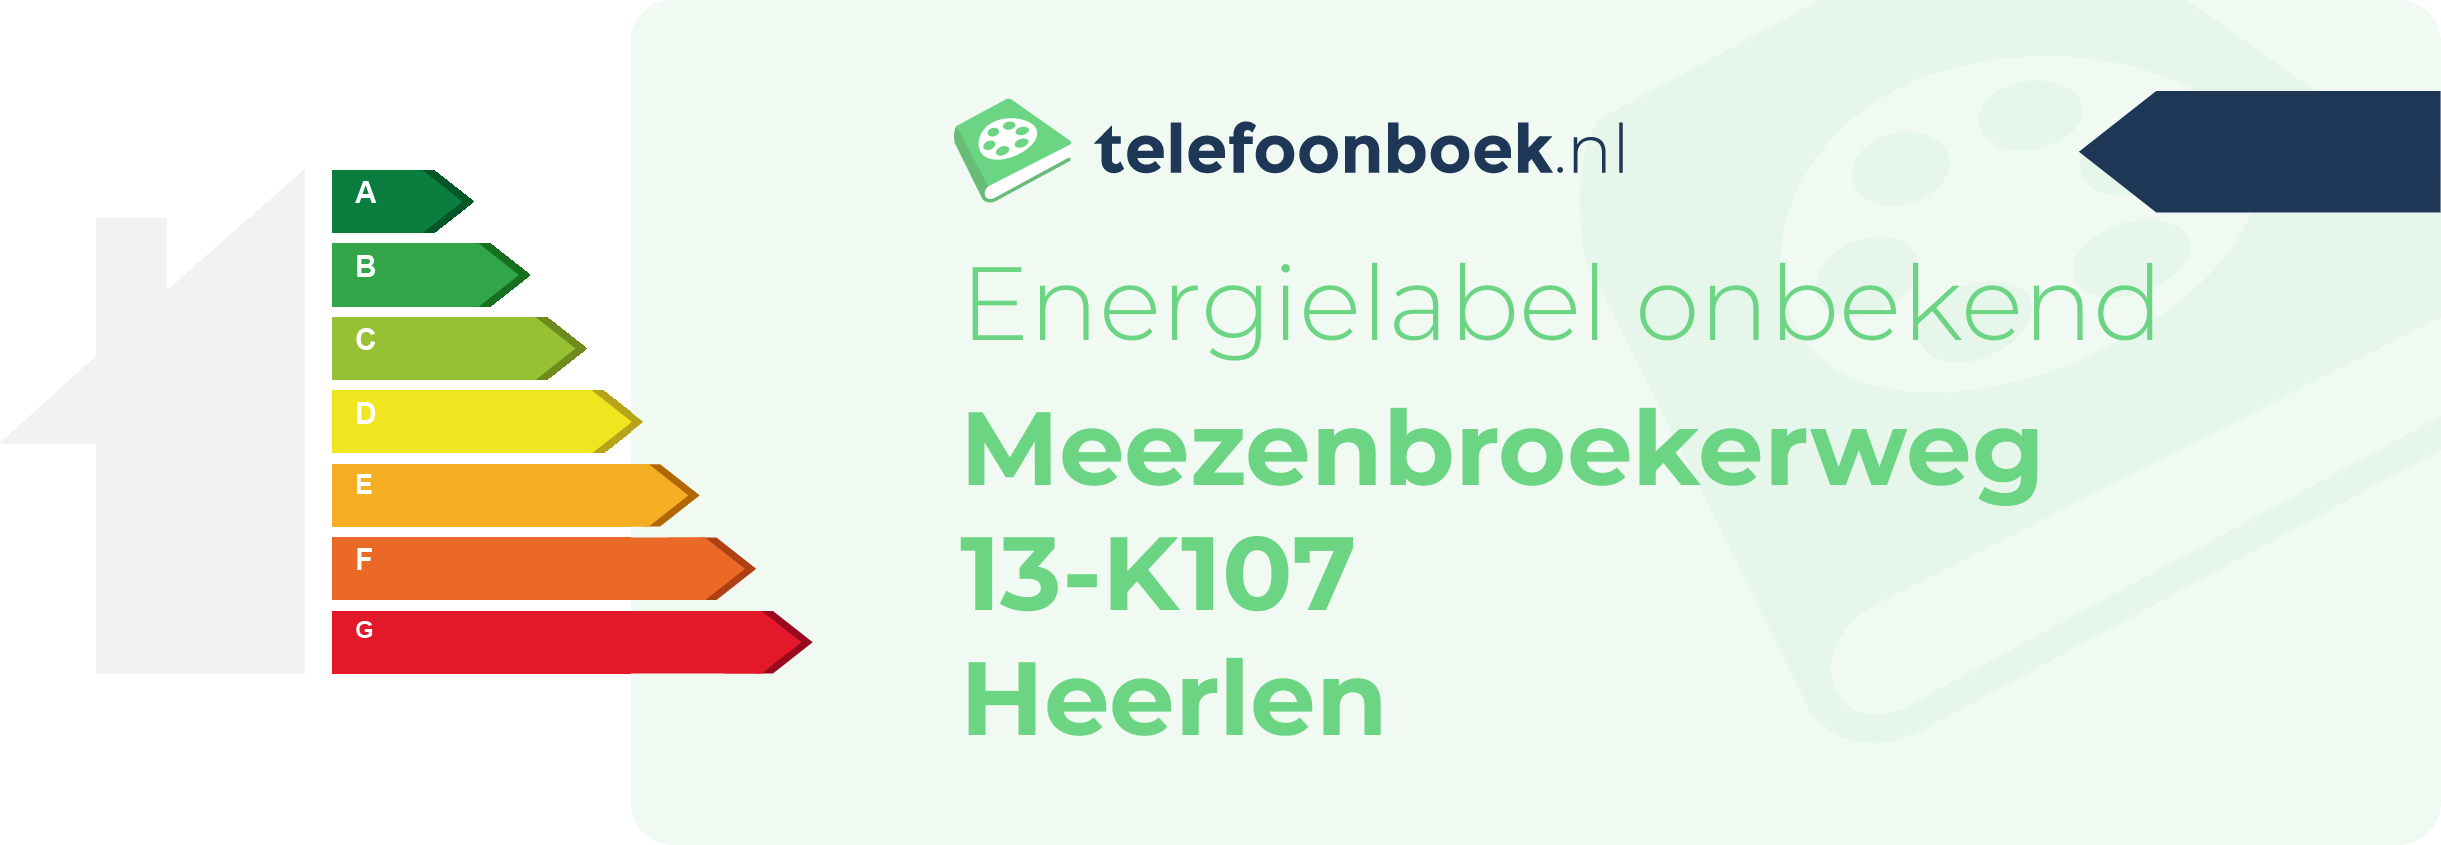 Energielabel Meezenbroekerweg 13-K107 Heerlen